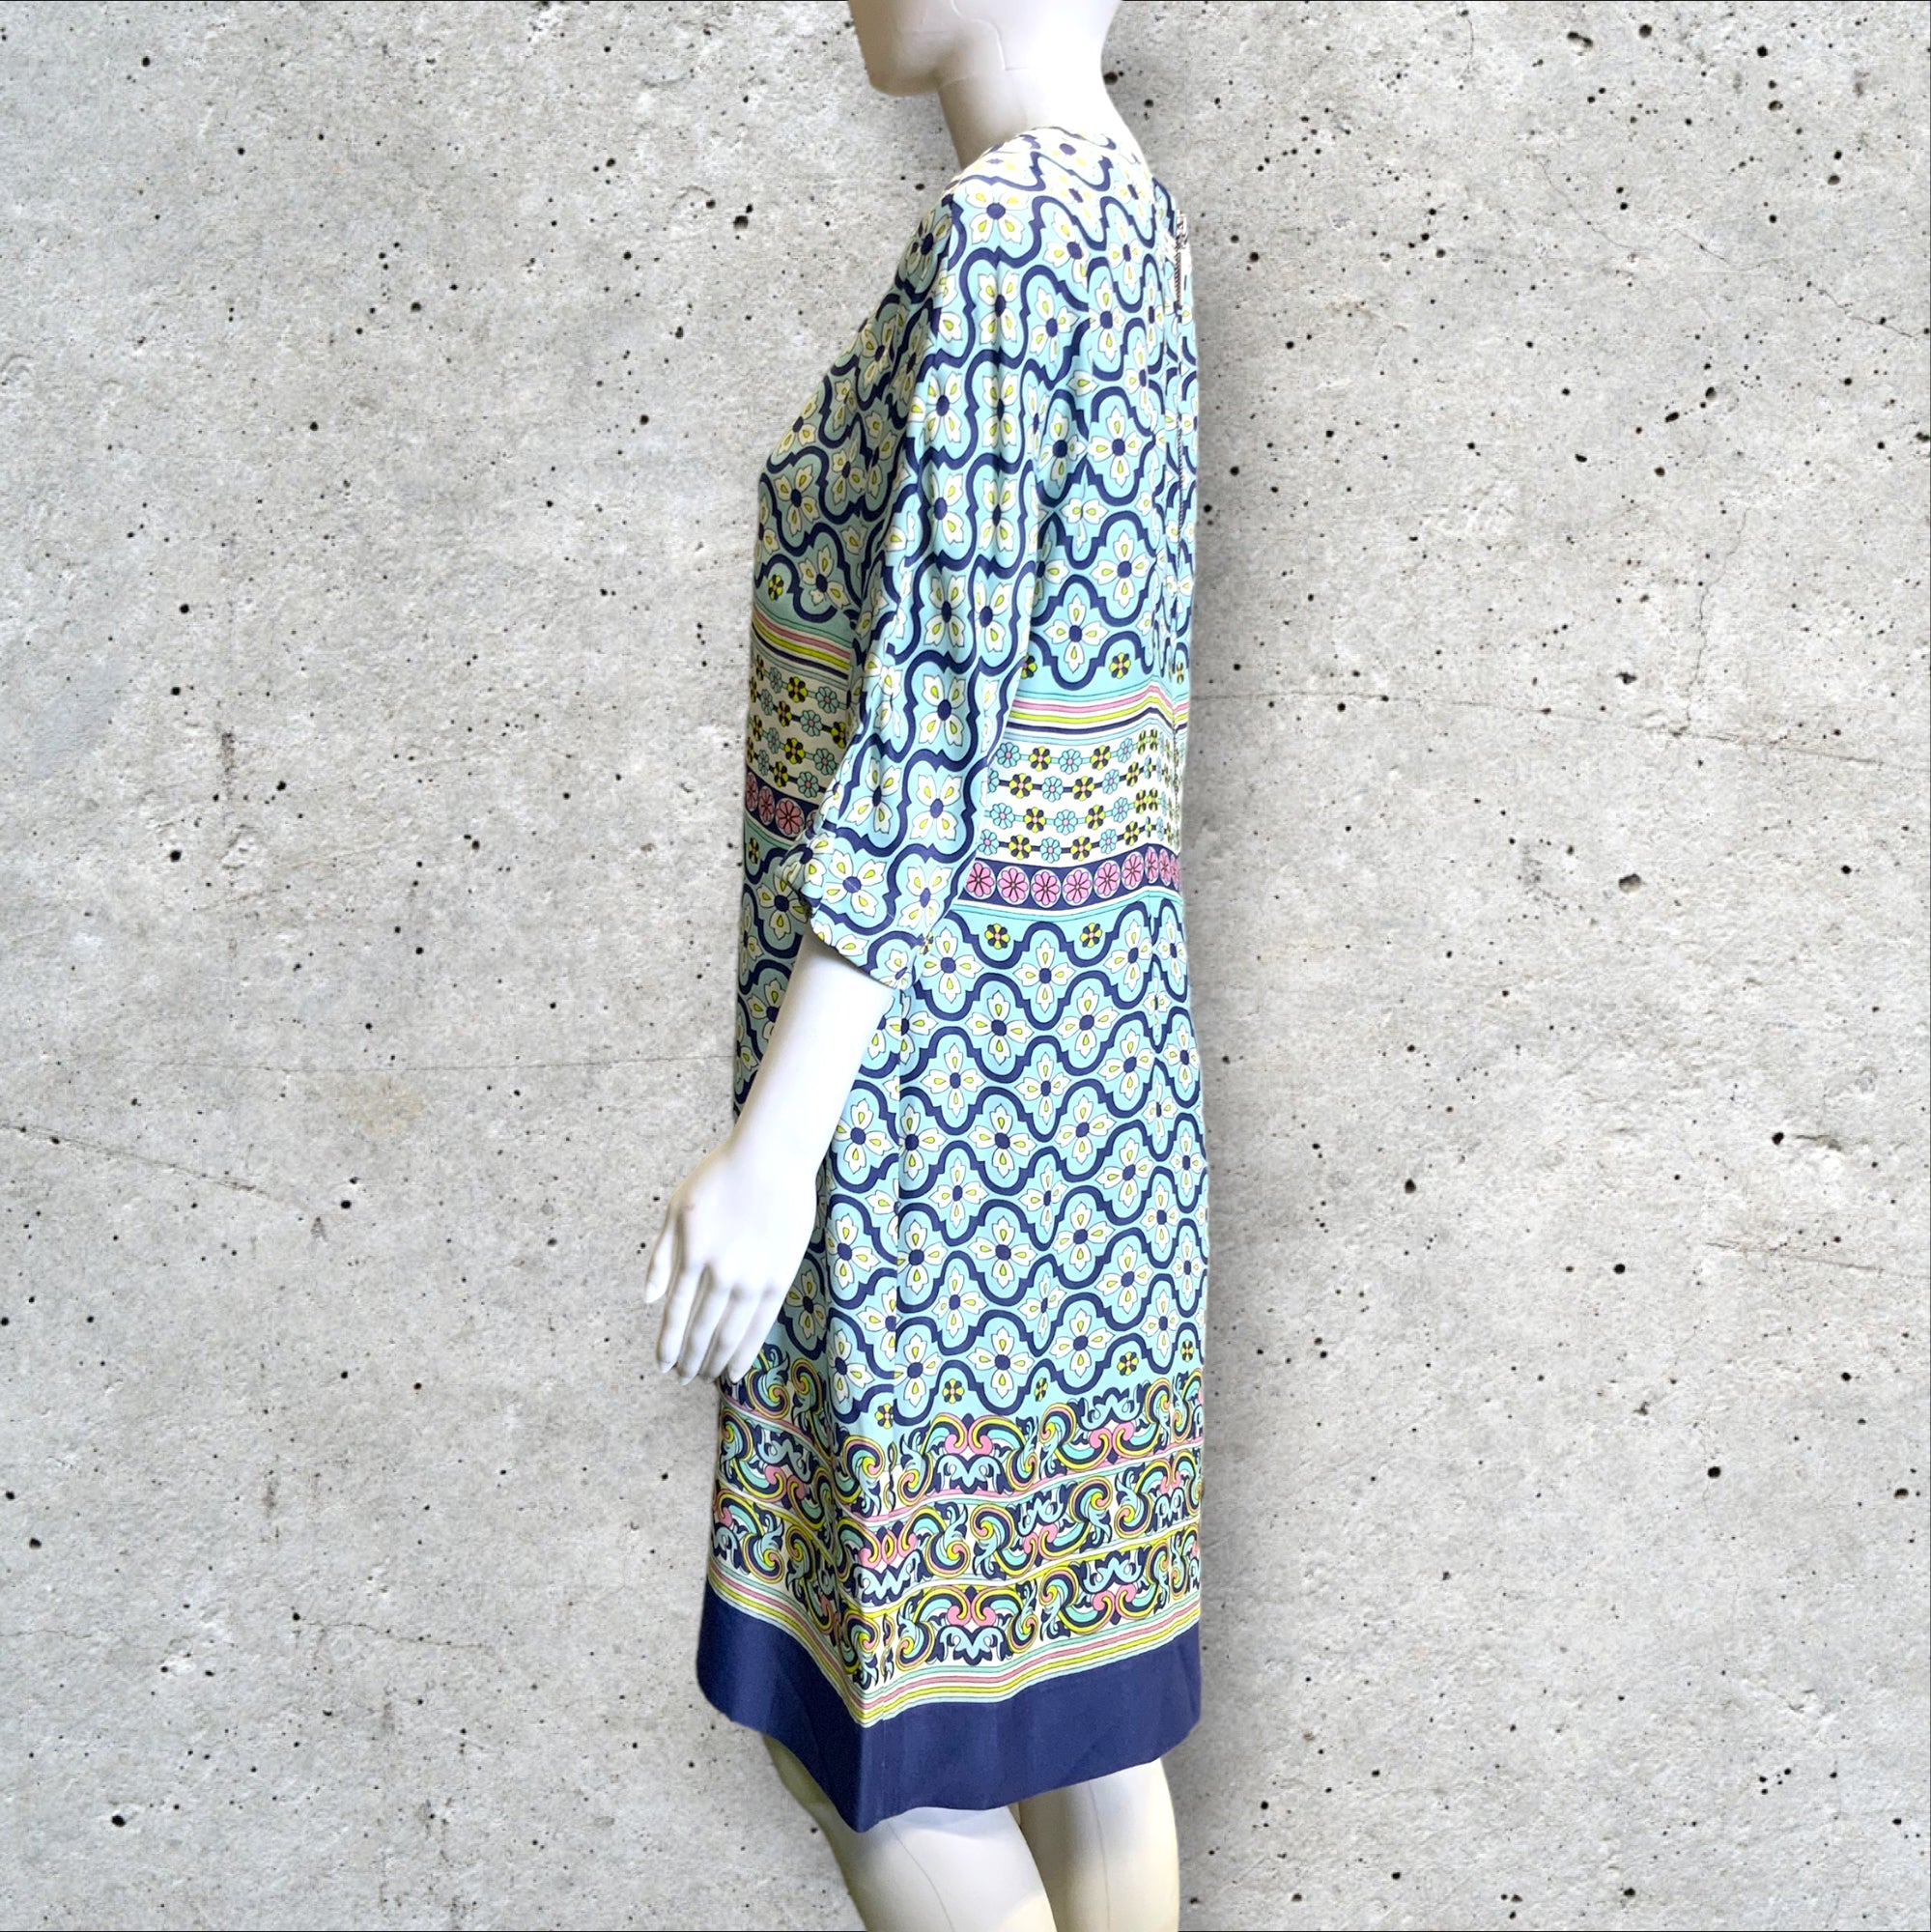 VERGA 'Florentine' Short Sleeved Blue Floral Print Shift Dress - Size 14